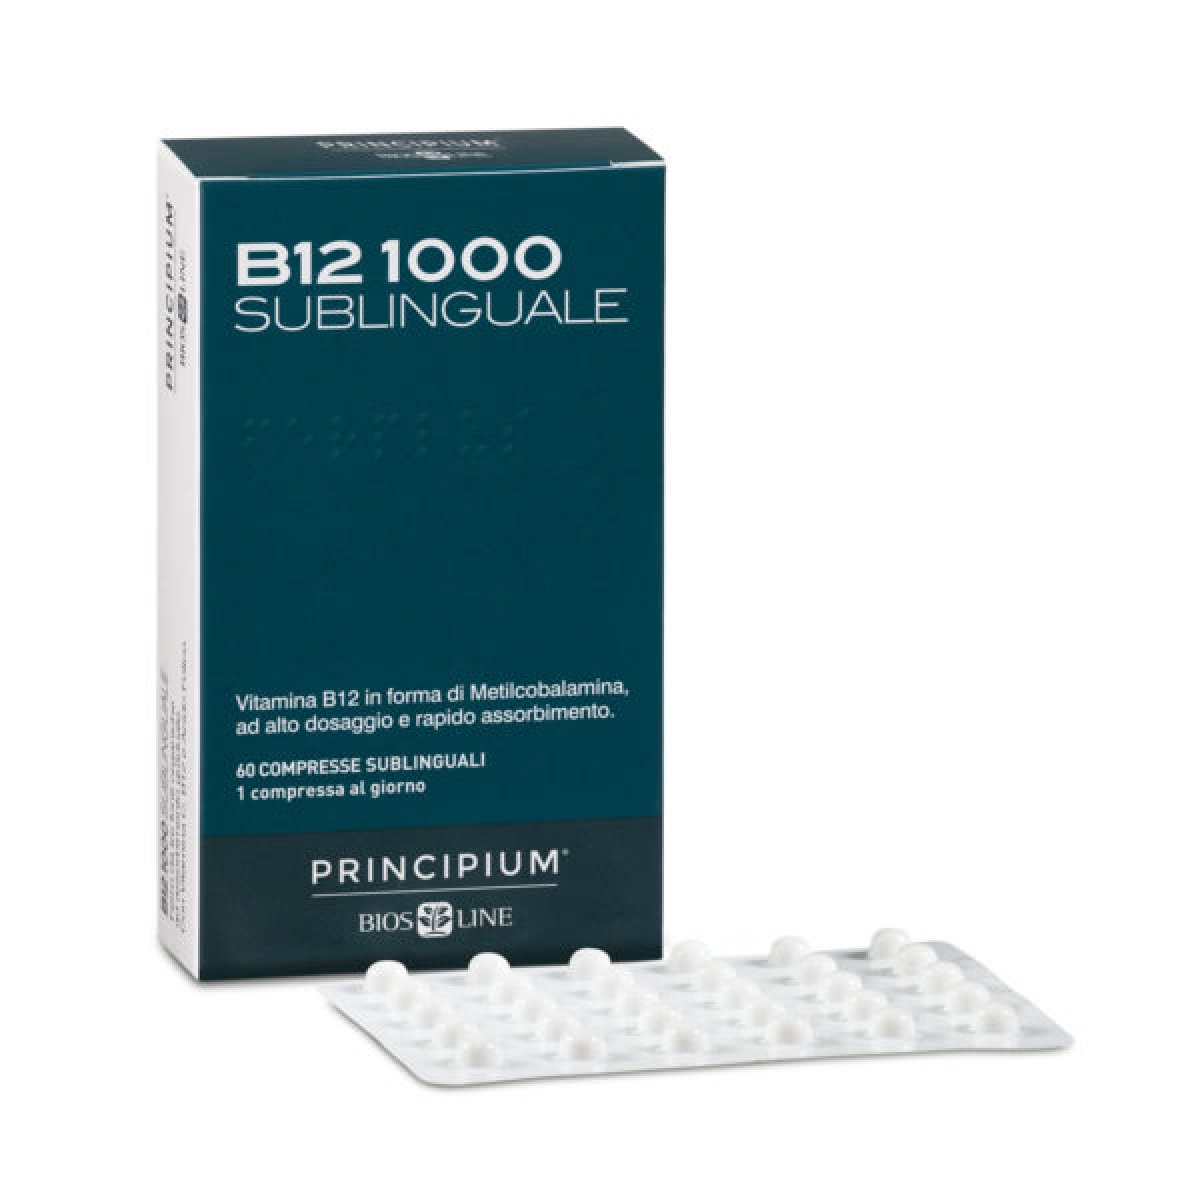 PRINCIPIUM B12 1000 Sublinguale - Bios Line VITAMINA B12 IN FORMA ATTIVA E BIODISPONIBILE, AD ELEVATO ASSORBIMENTO. 60 compresse sublinguali.